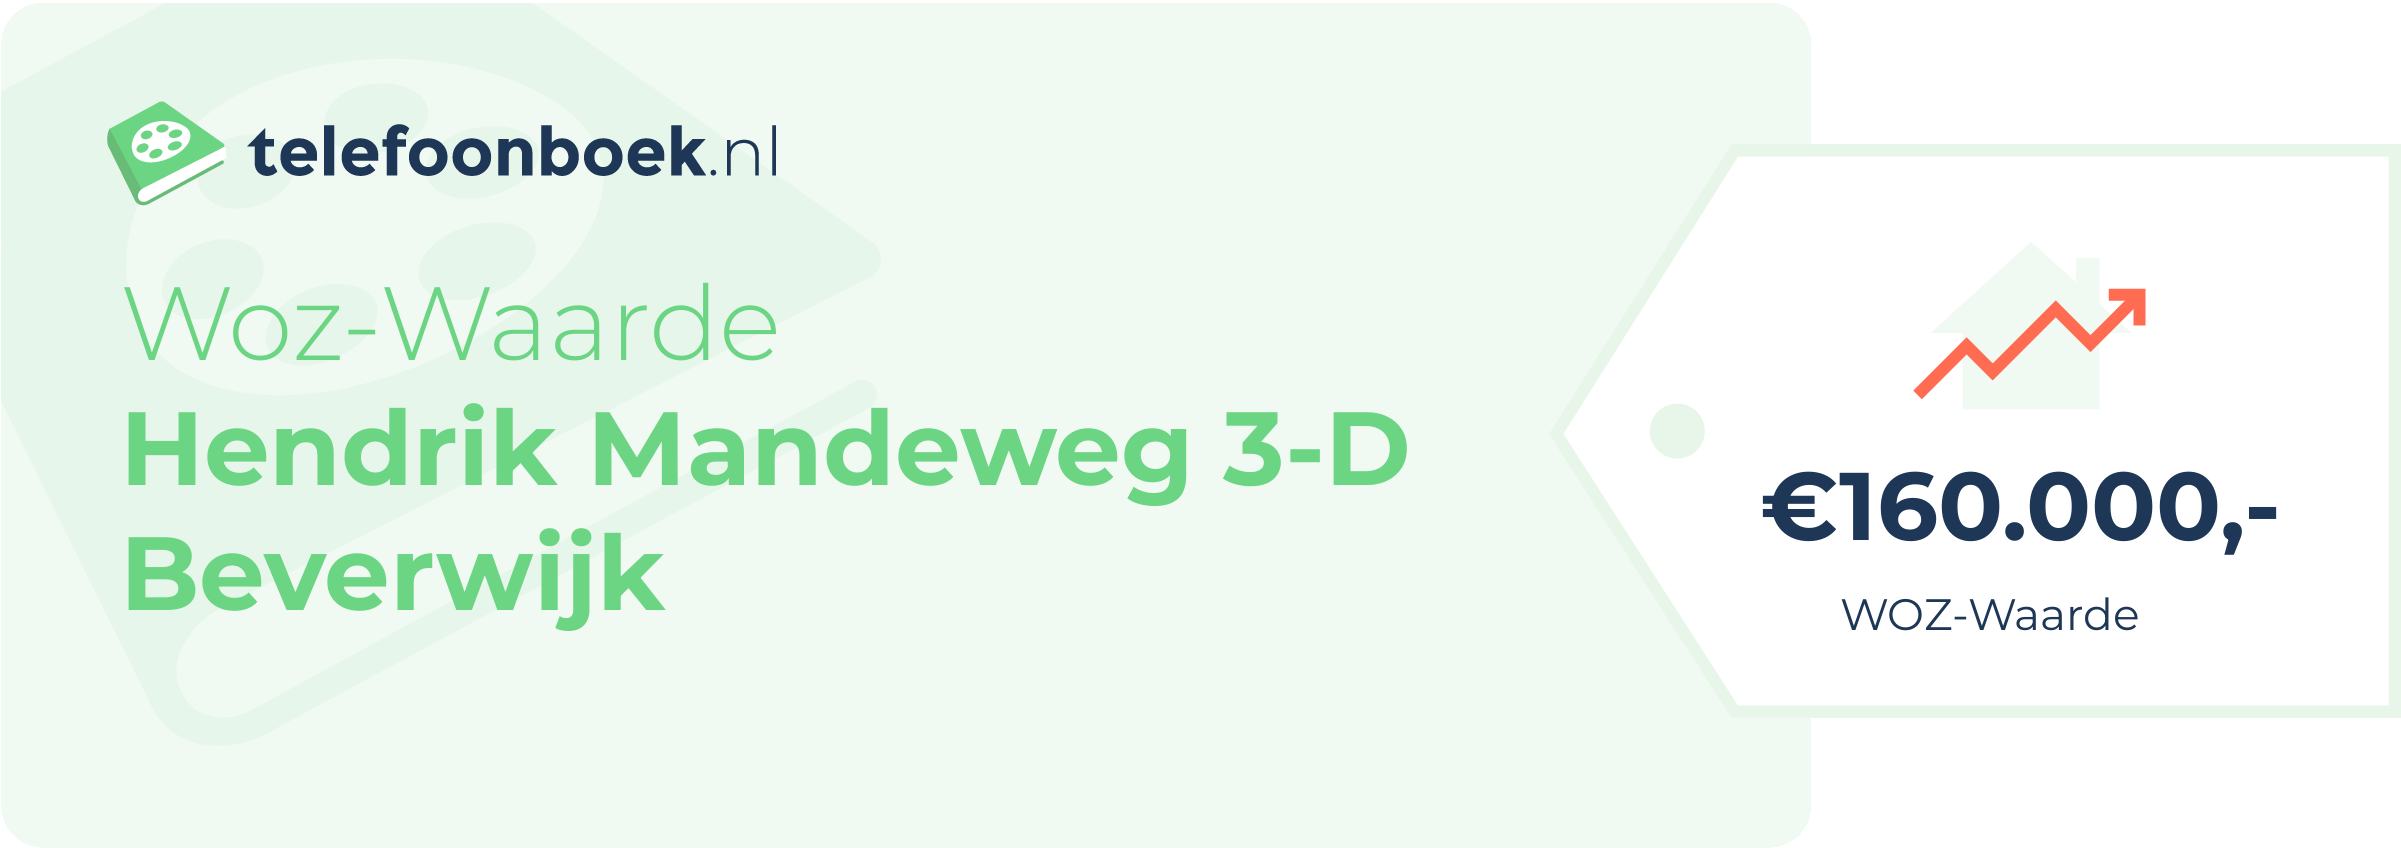 WOZ-waarde Hendrik Mandeweg 3-D Beverwijk